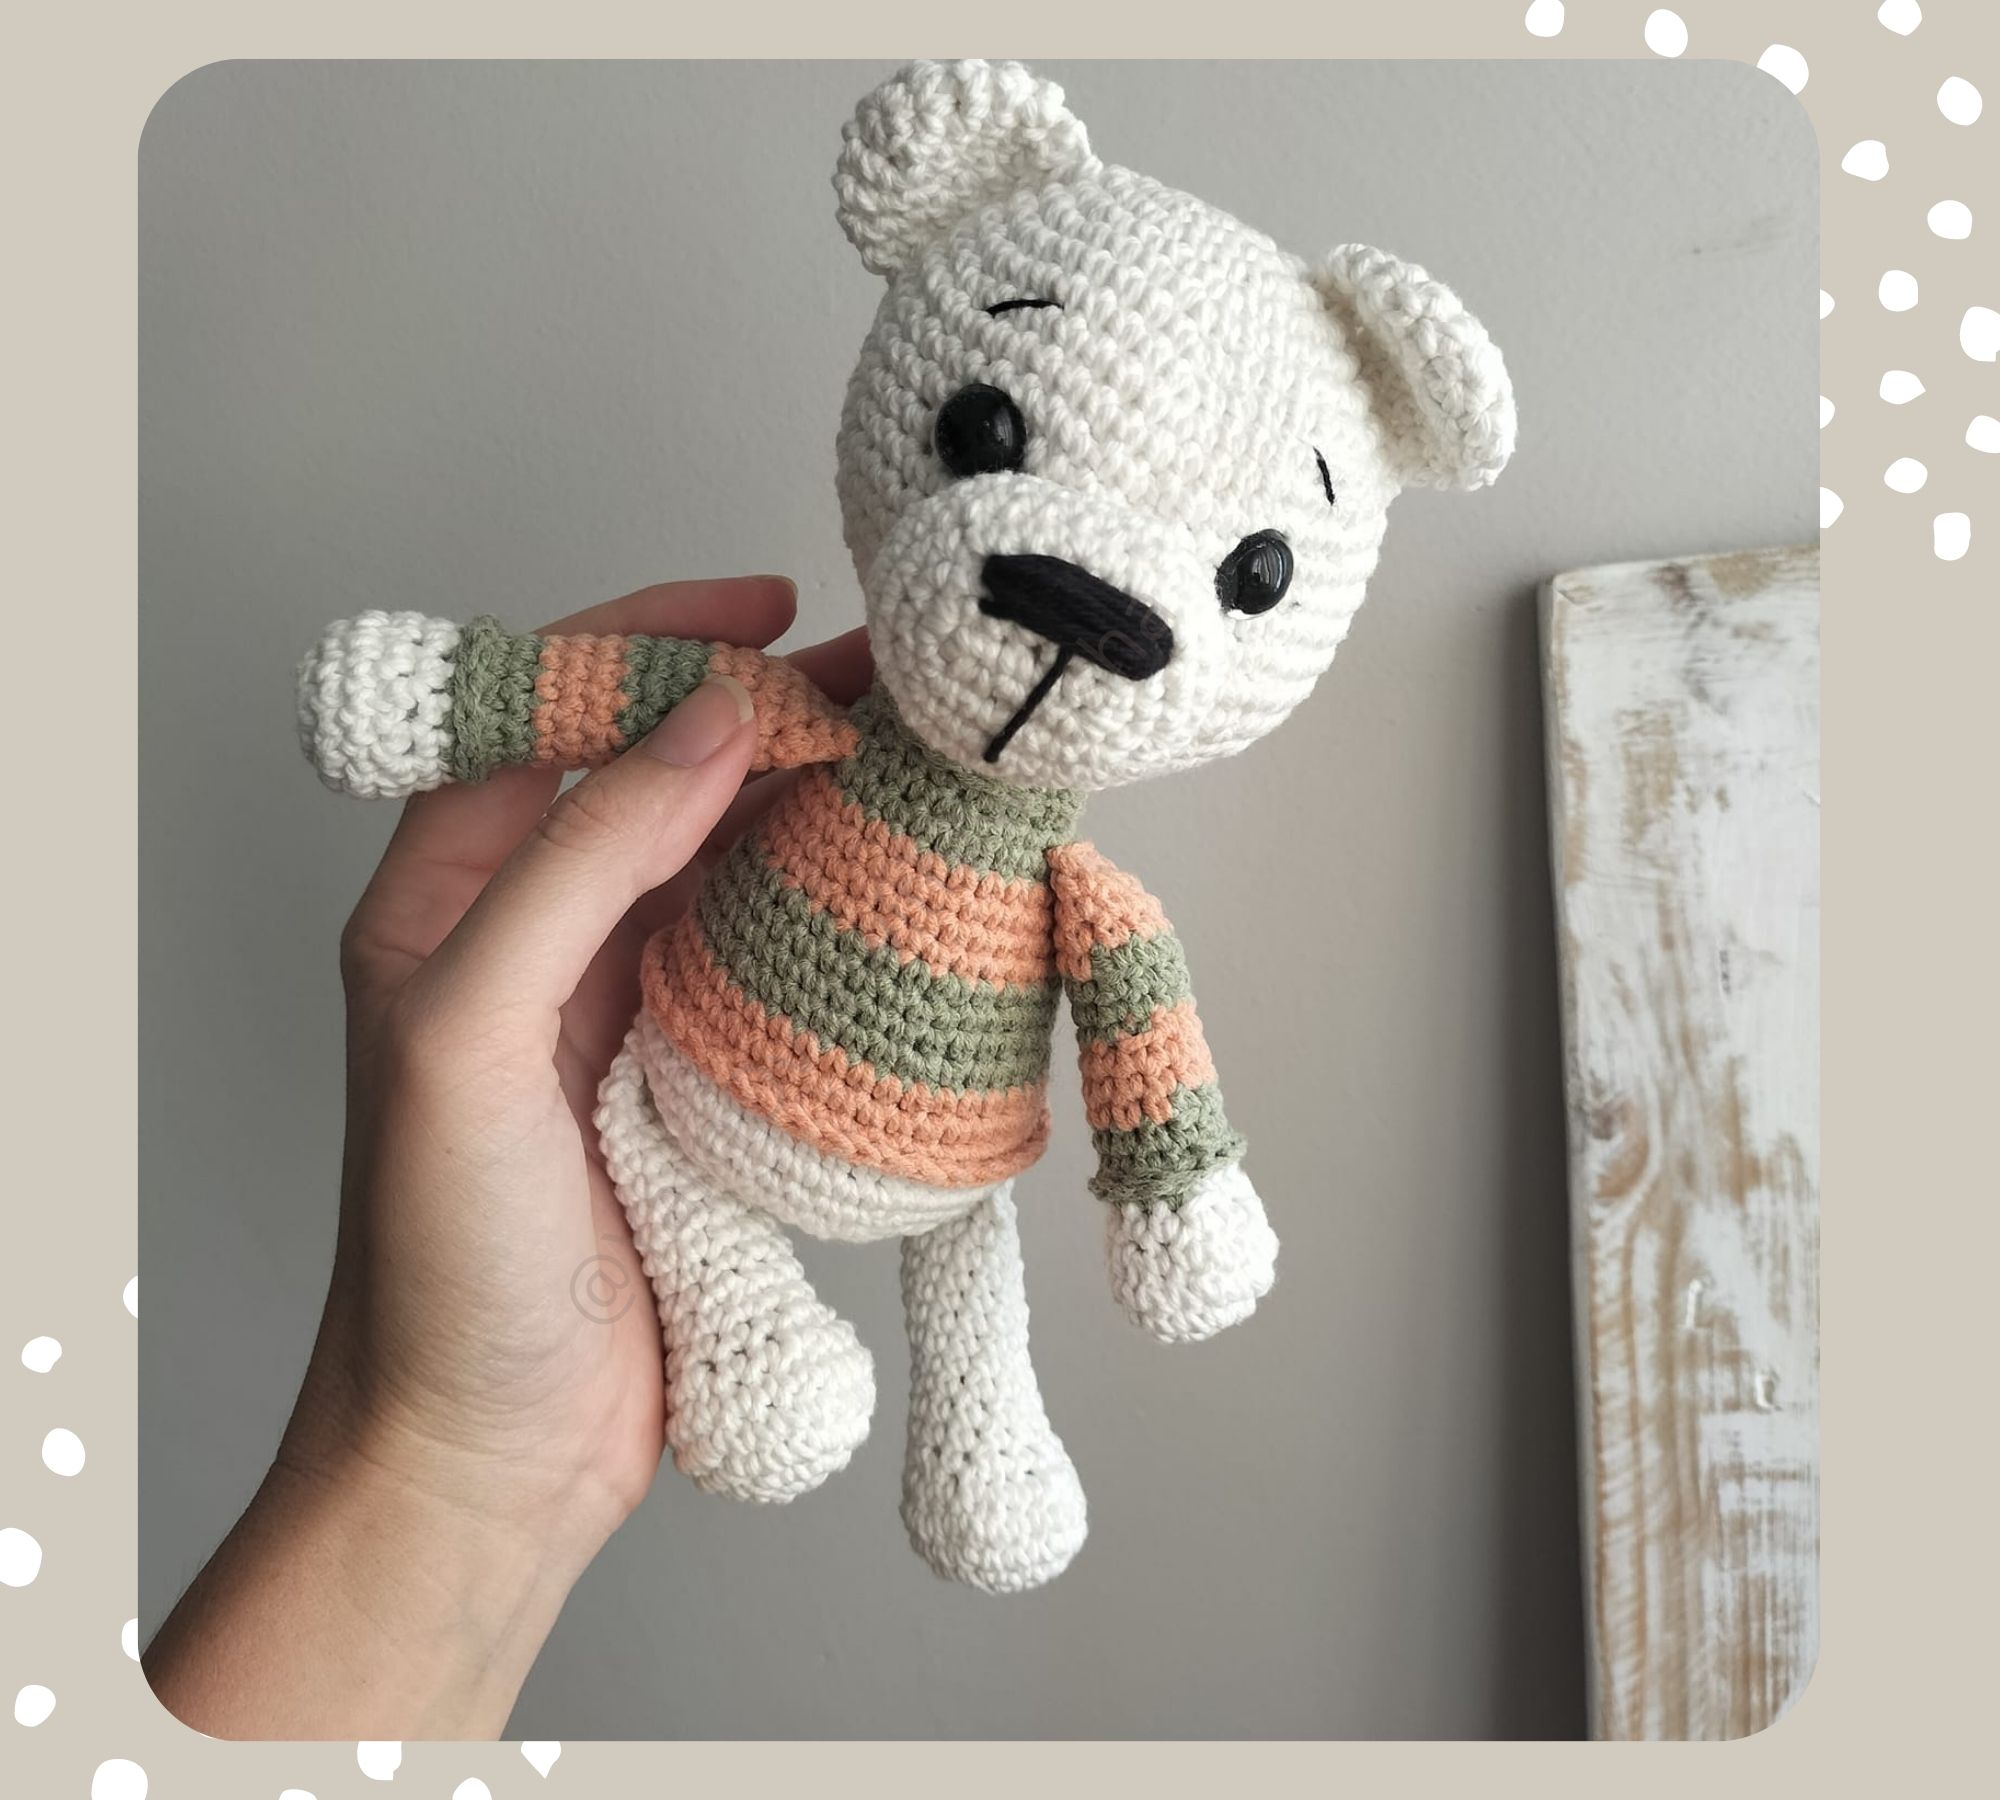 How to crochet a bear